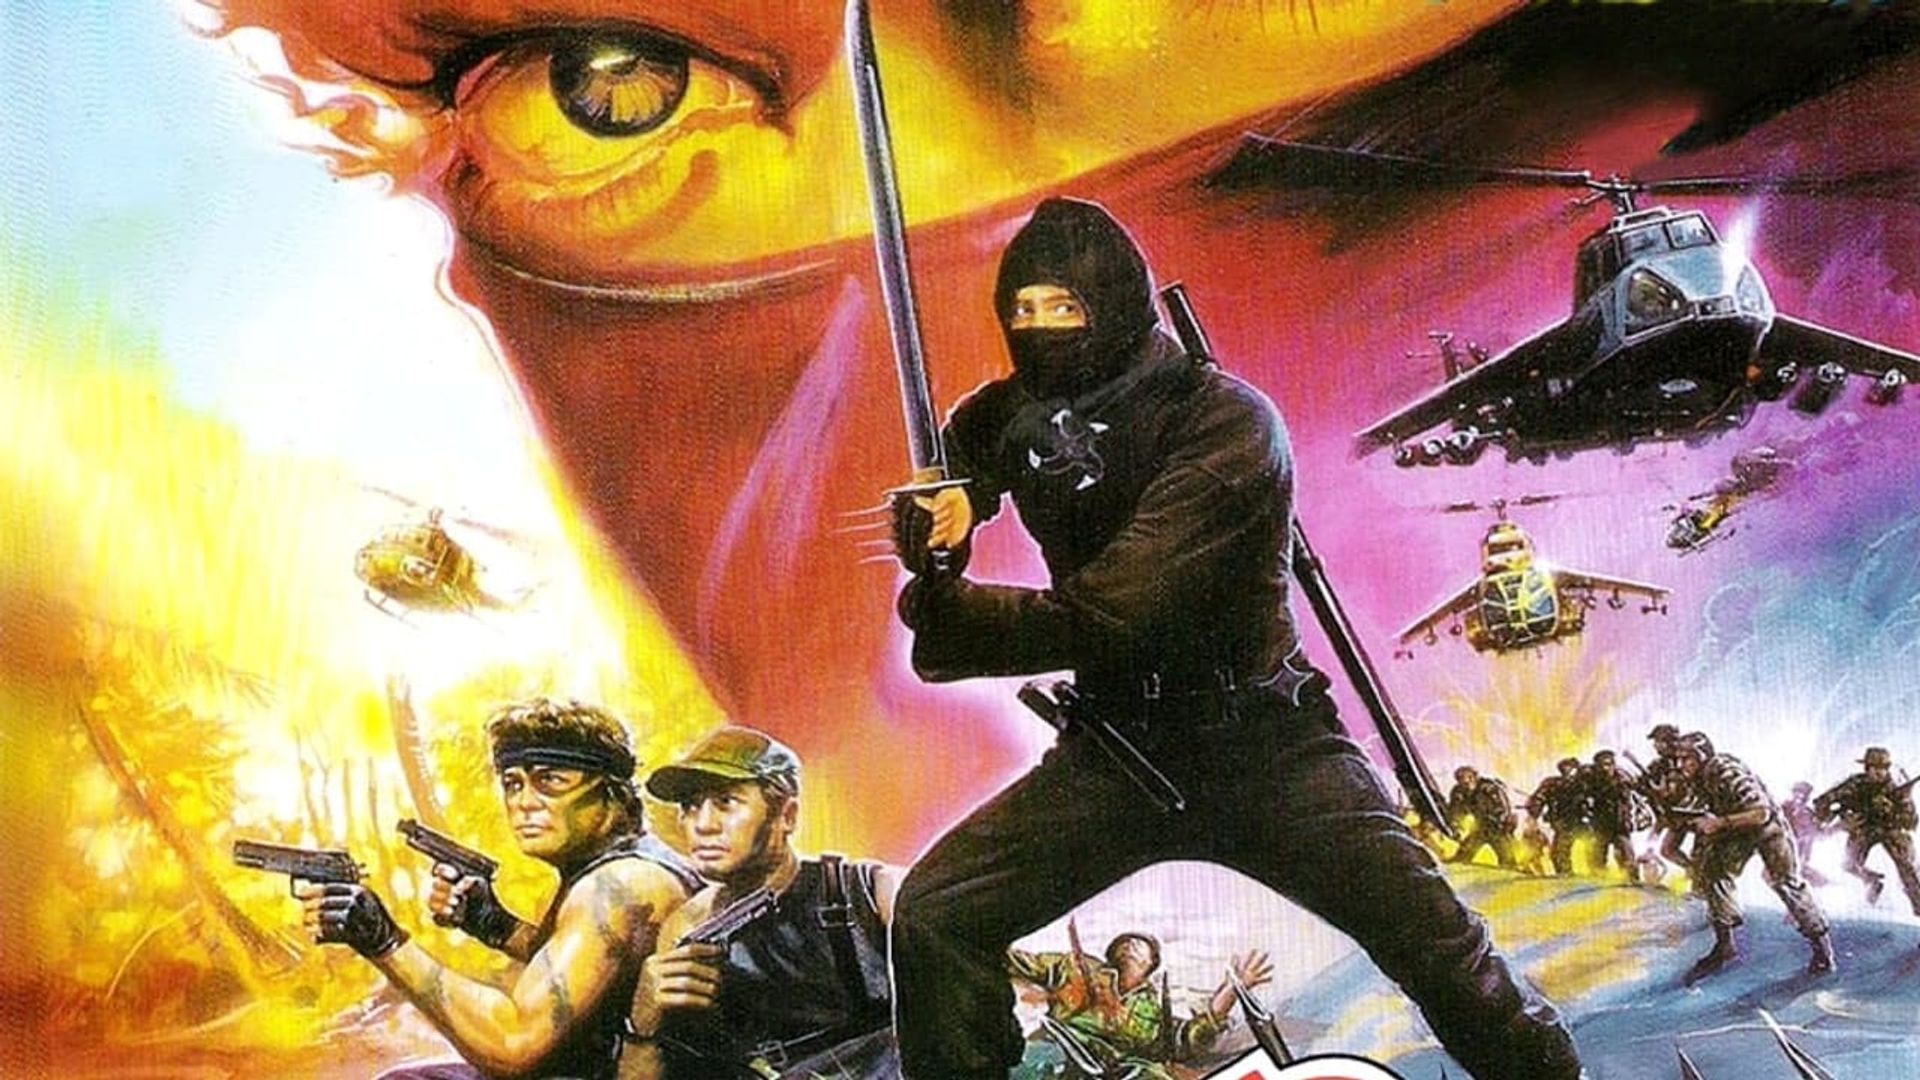 Ninja Demon's Massacre background